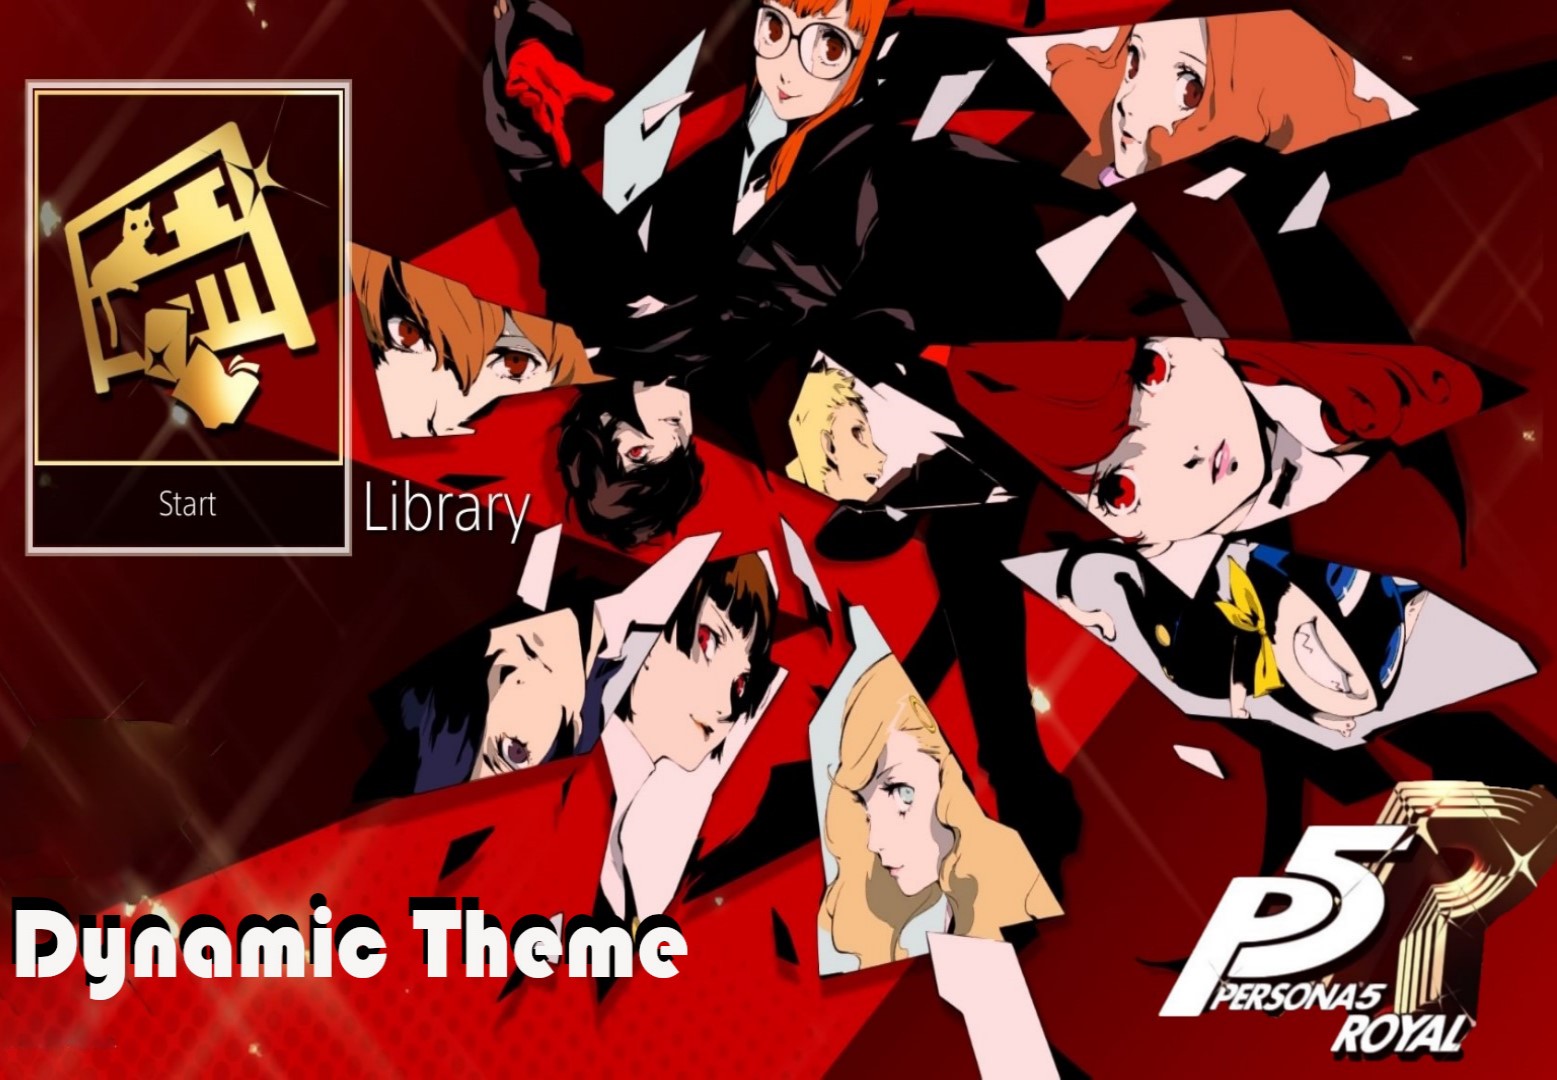 ﻿Persona 5 Royal - Phantom Thieves Dynamic Theme DLC EU PS4 CD Key